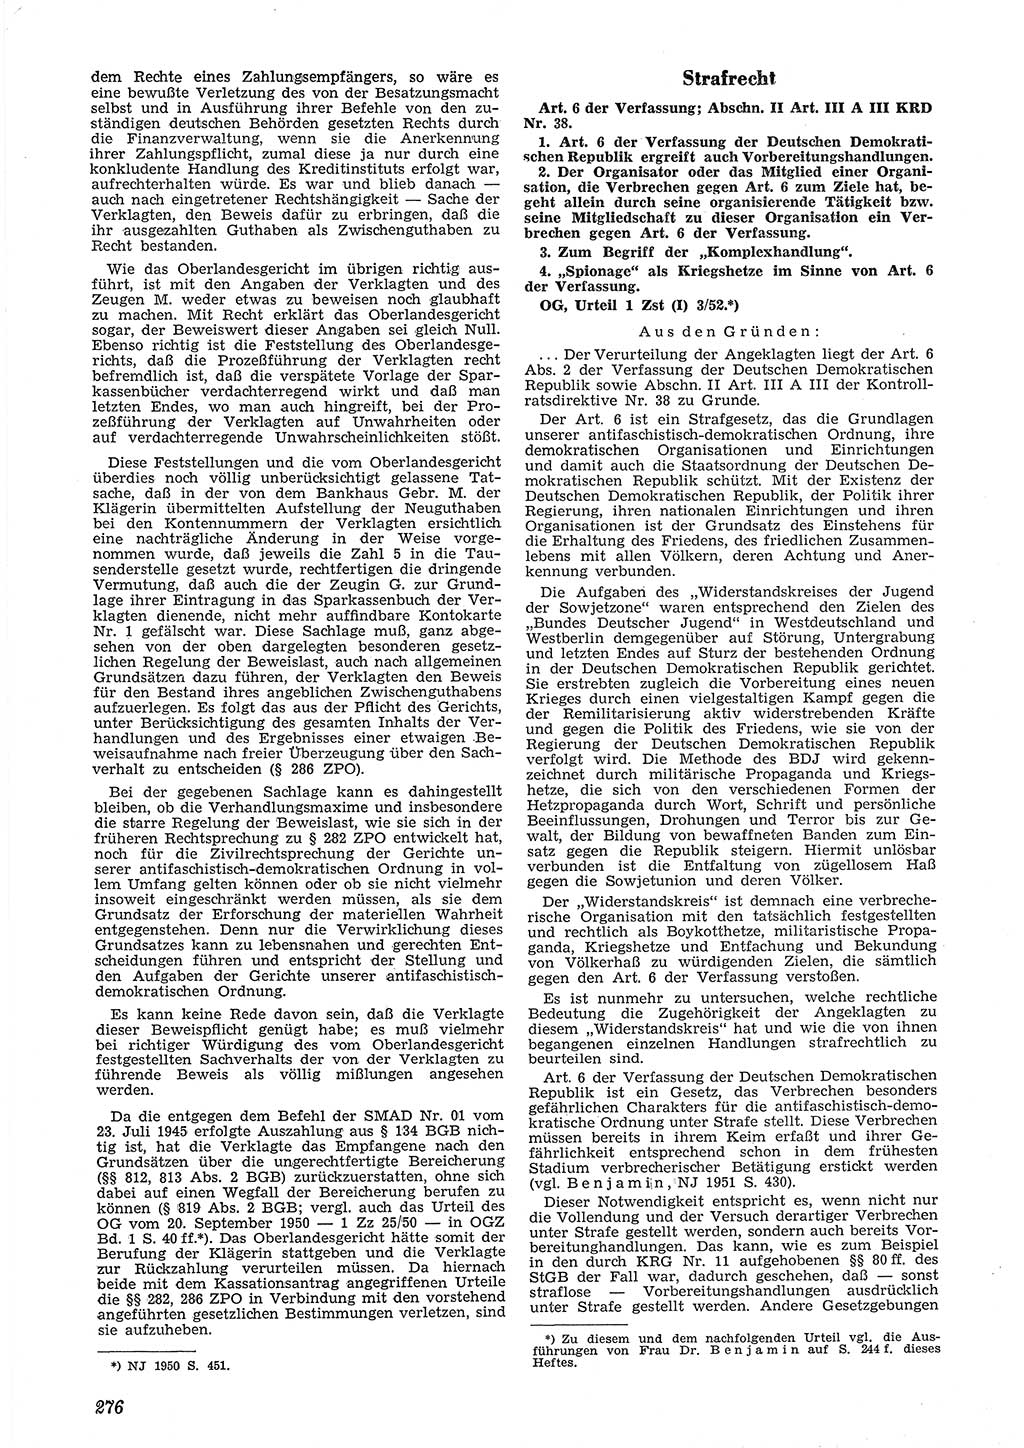 Neue Justiz (NJ), Zeitschrift für Recht und Rechtswissenschaft [Deutsche Demokratische Republik (DDR)], 6. Jahrgang 1952, Seite 276 (NJ DDR 1952, S. 276)